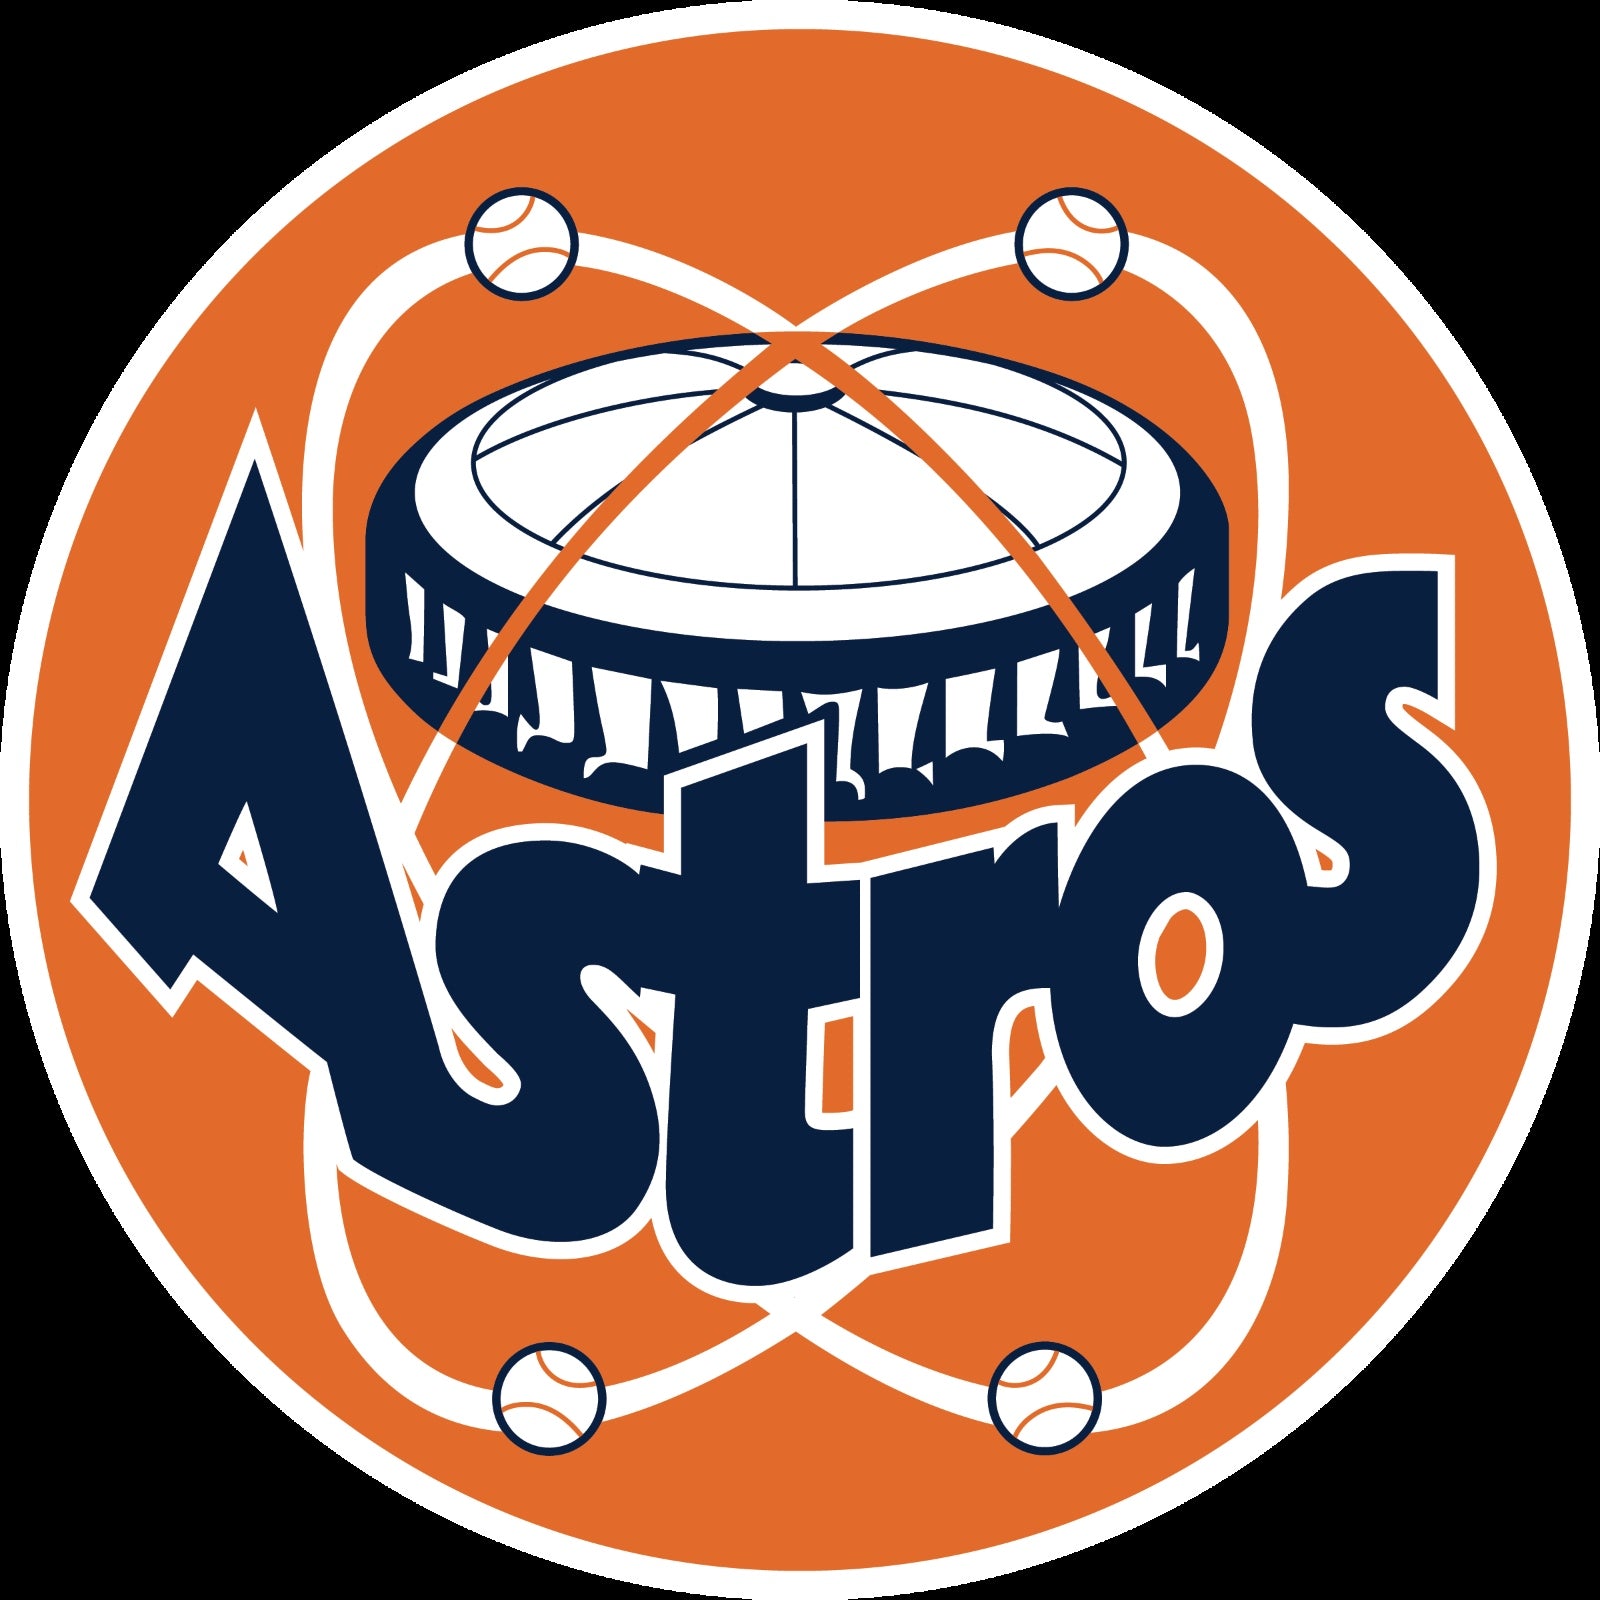 Houston Astros Vinyl Sticker Decals